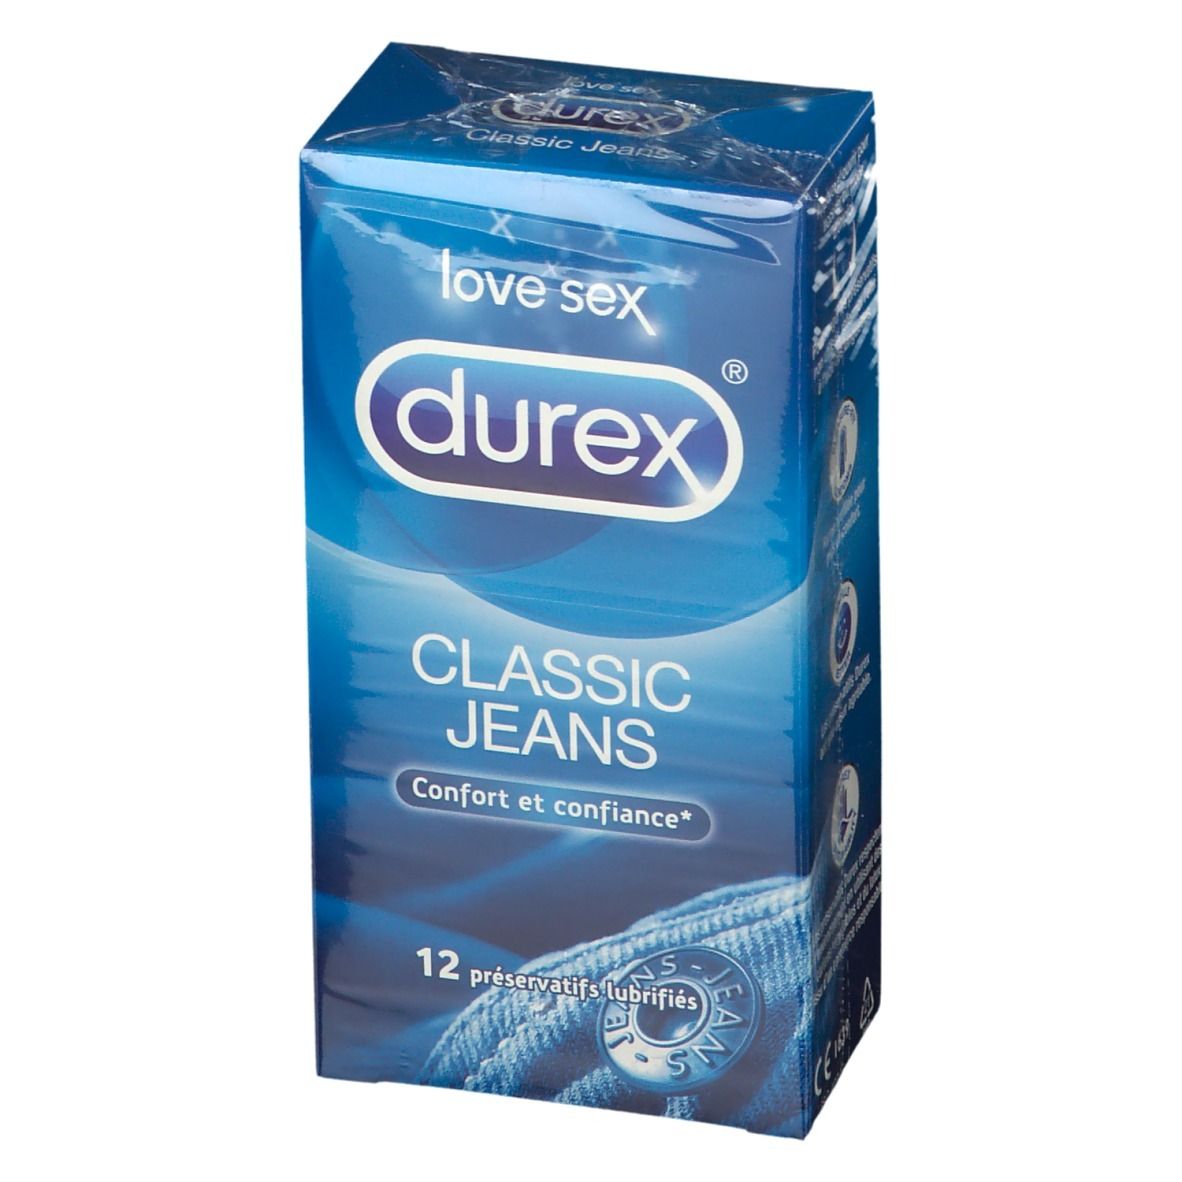 durex® Classic jeans